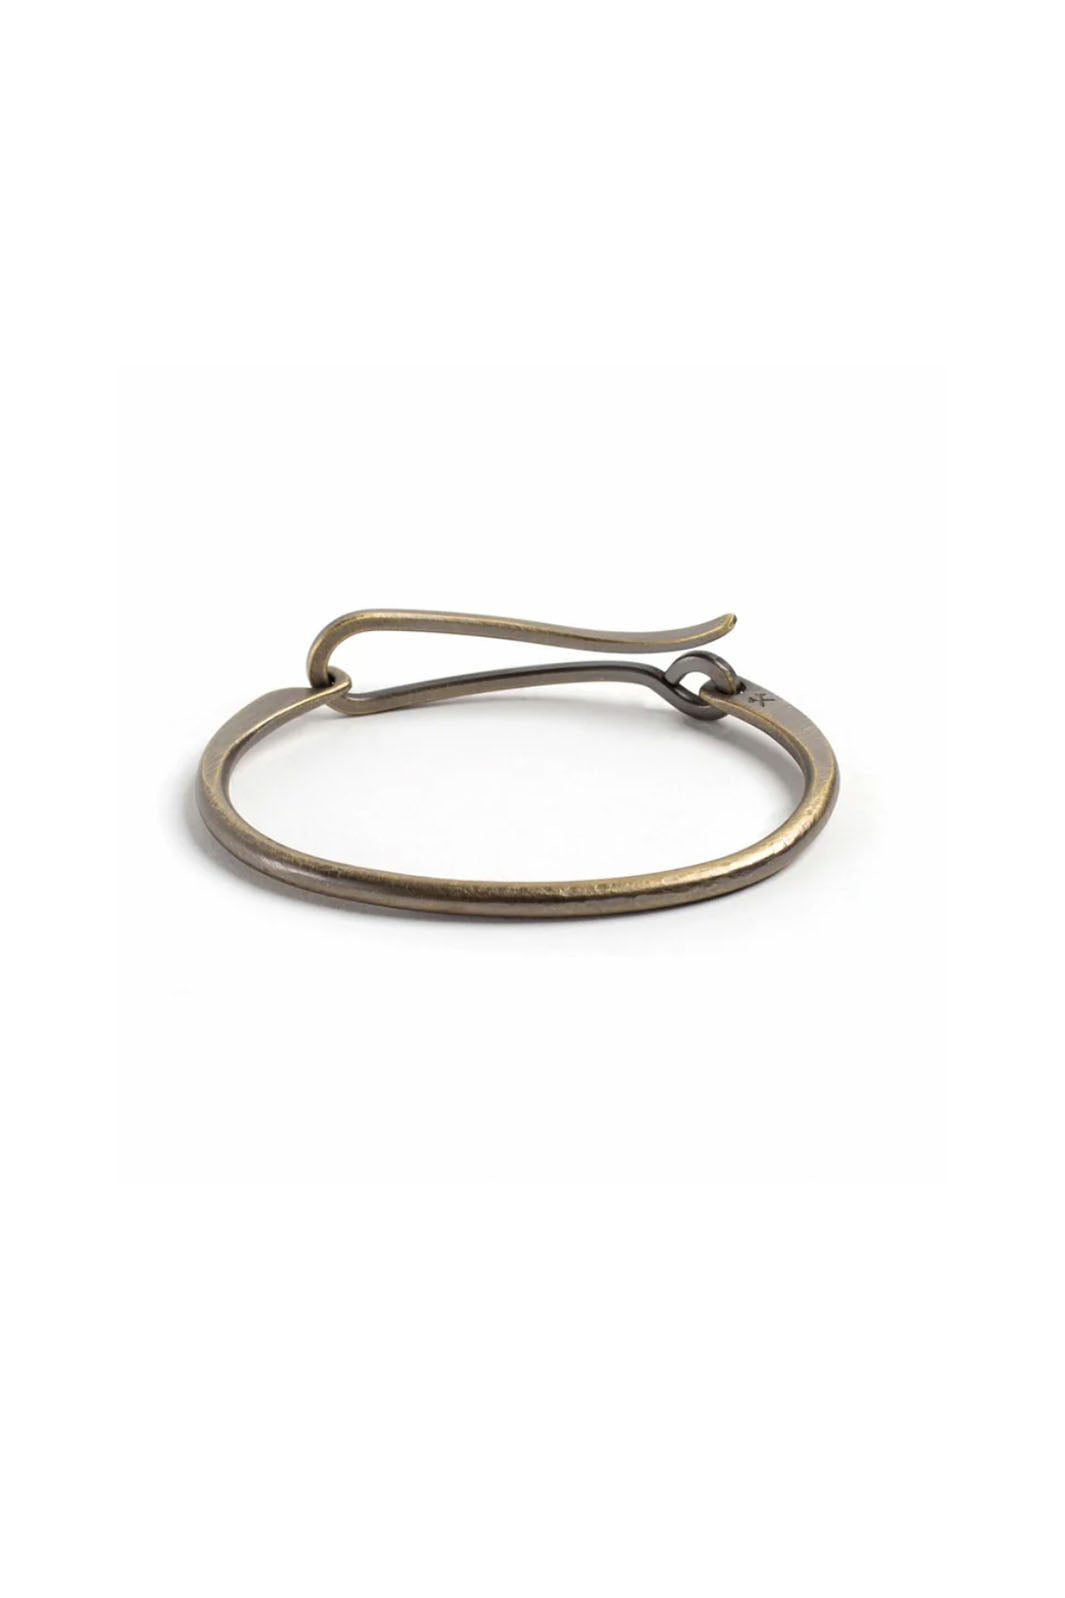 Hook Bracelet - Brass, Work Patina